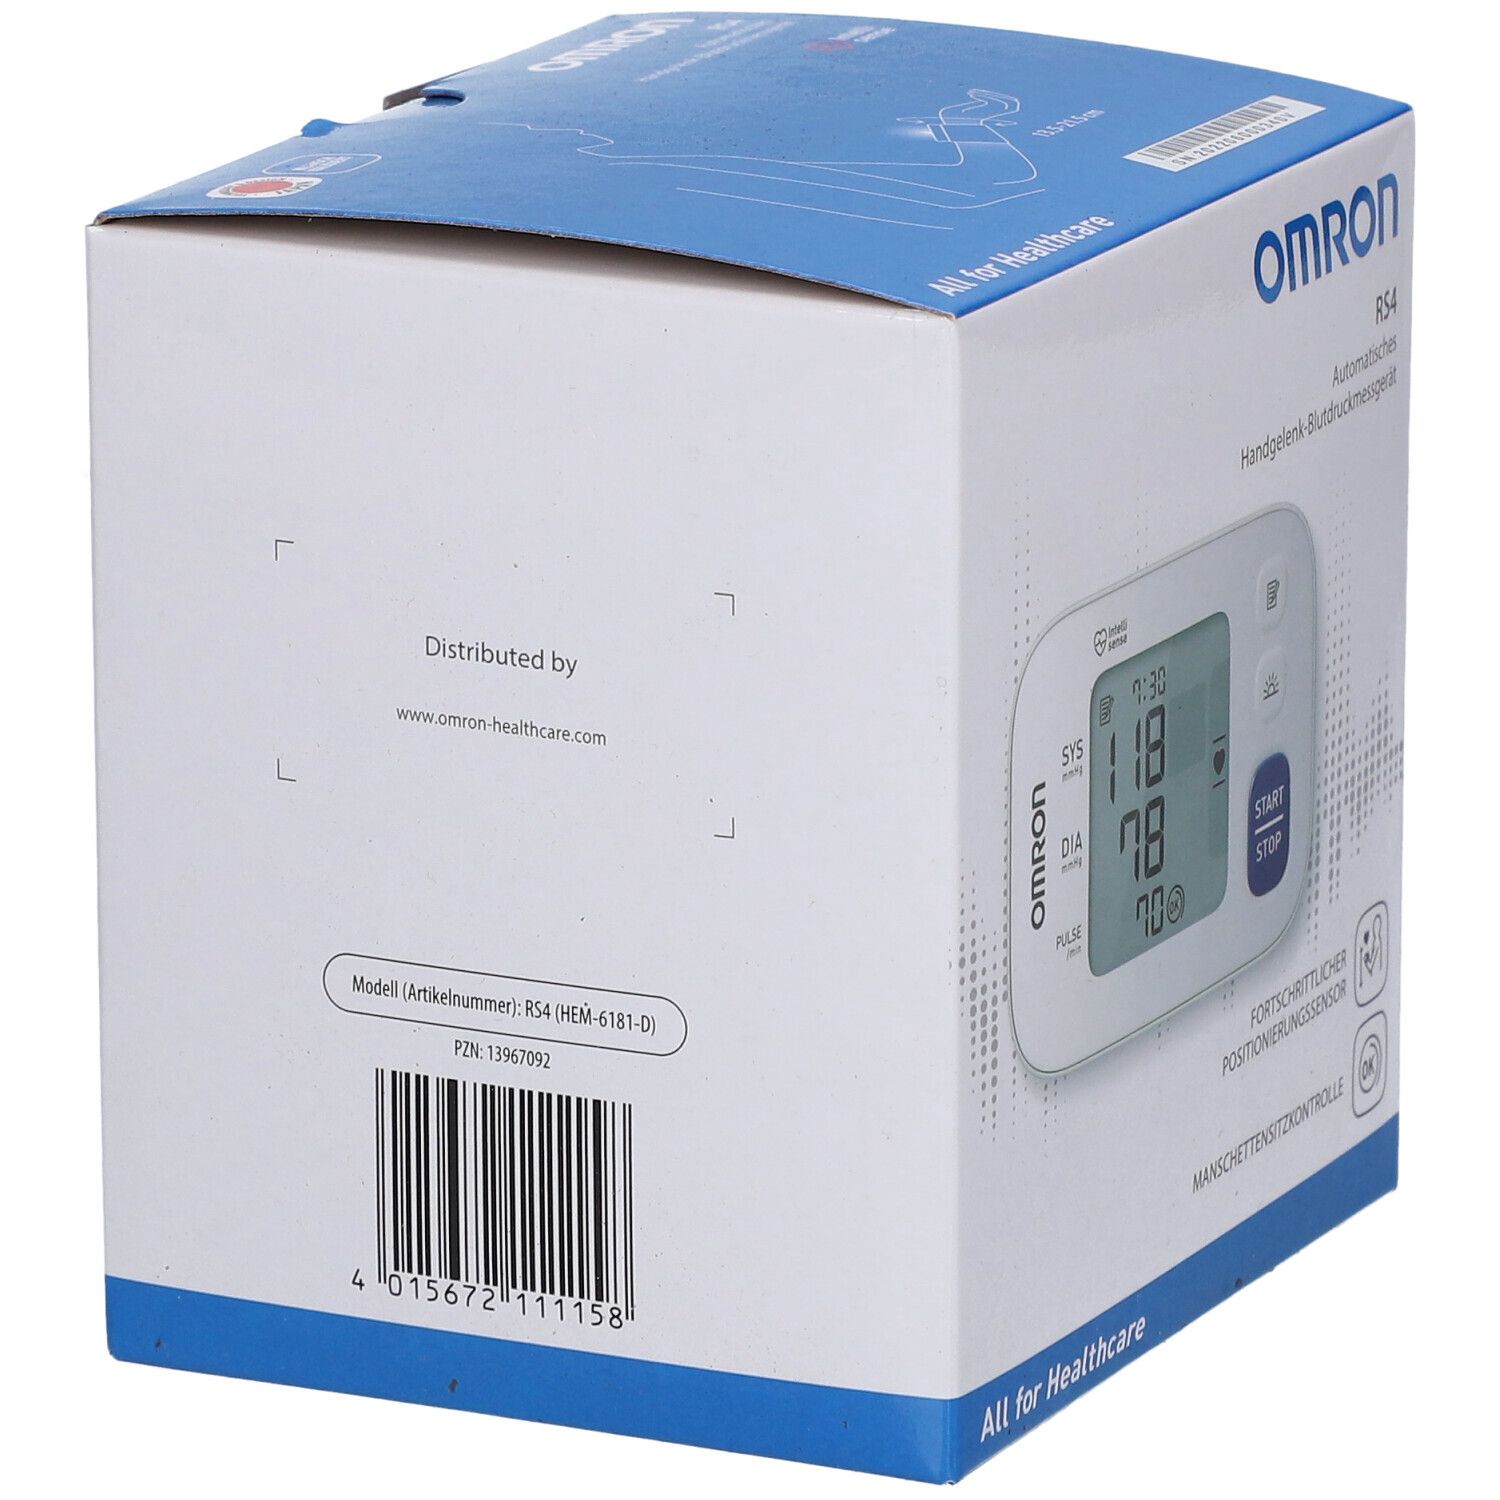 Omron Rs4 Handgelenk Blutdruckmessgerät Hem-6181-D von HERMES Arzneimittel  GmbH Markt-Apotheke Ratzeburg